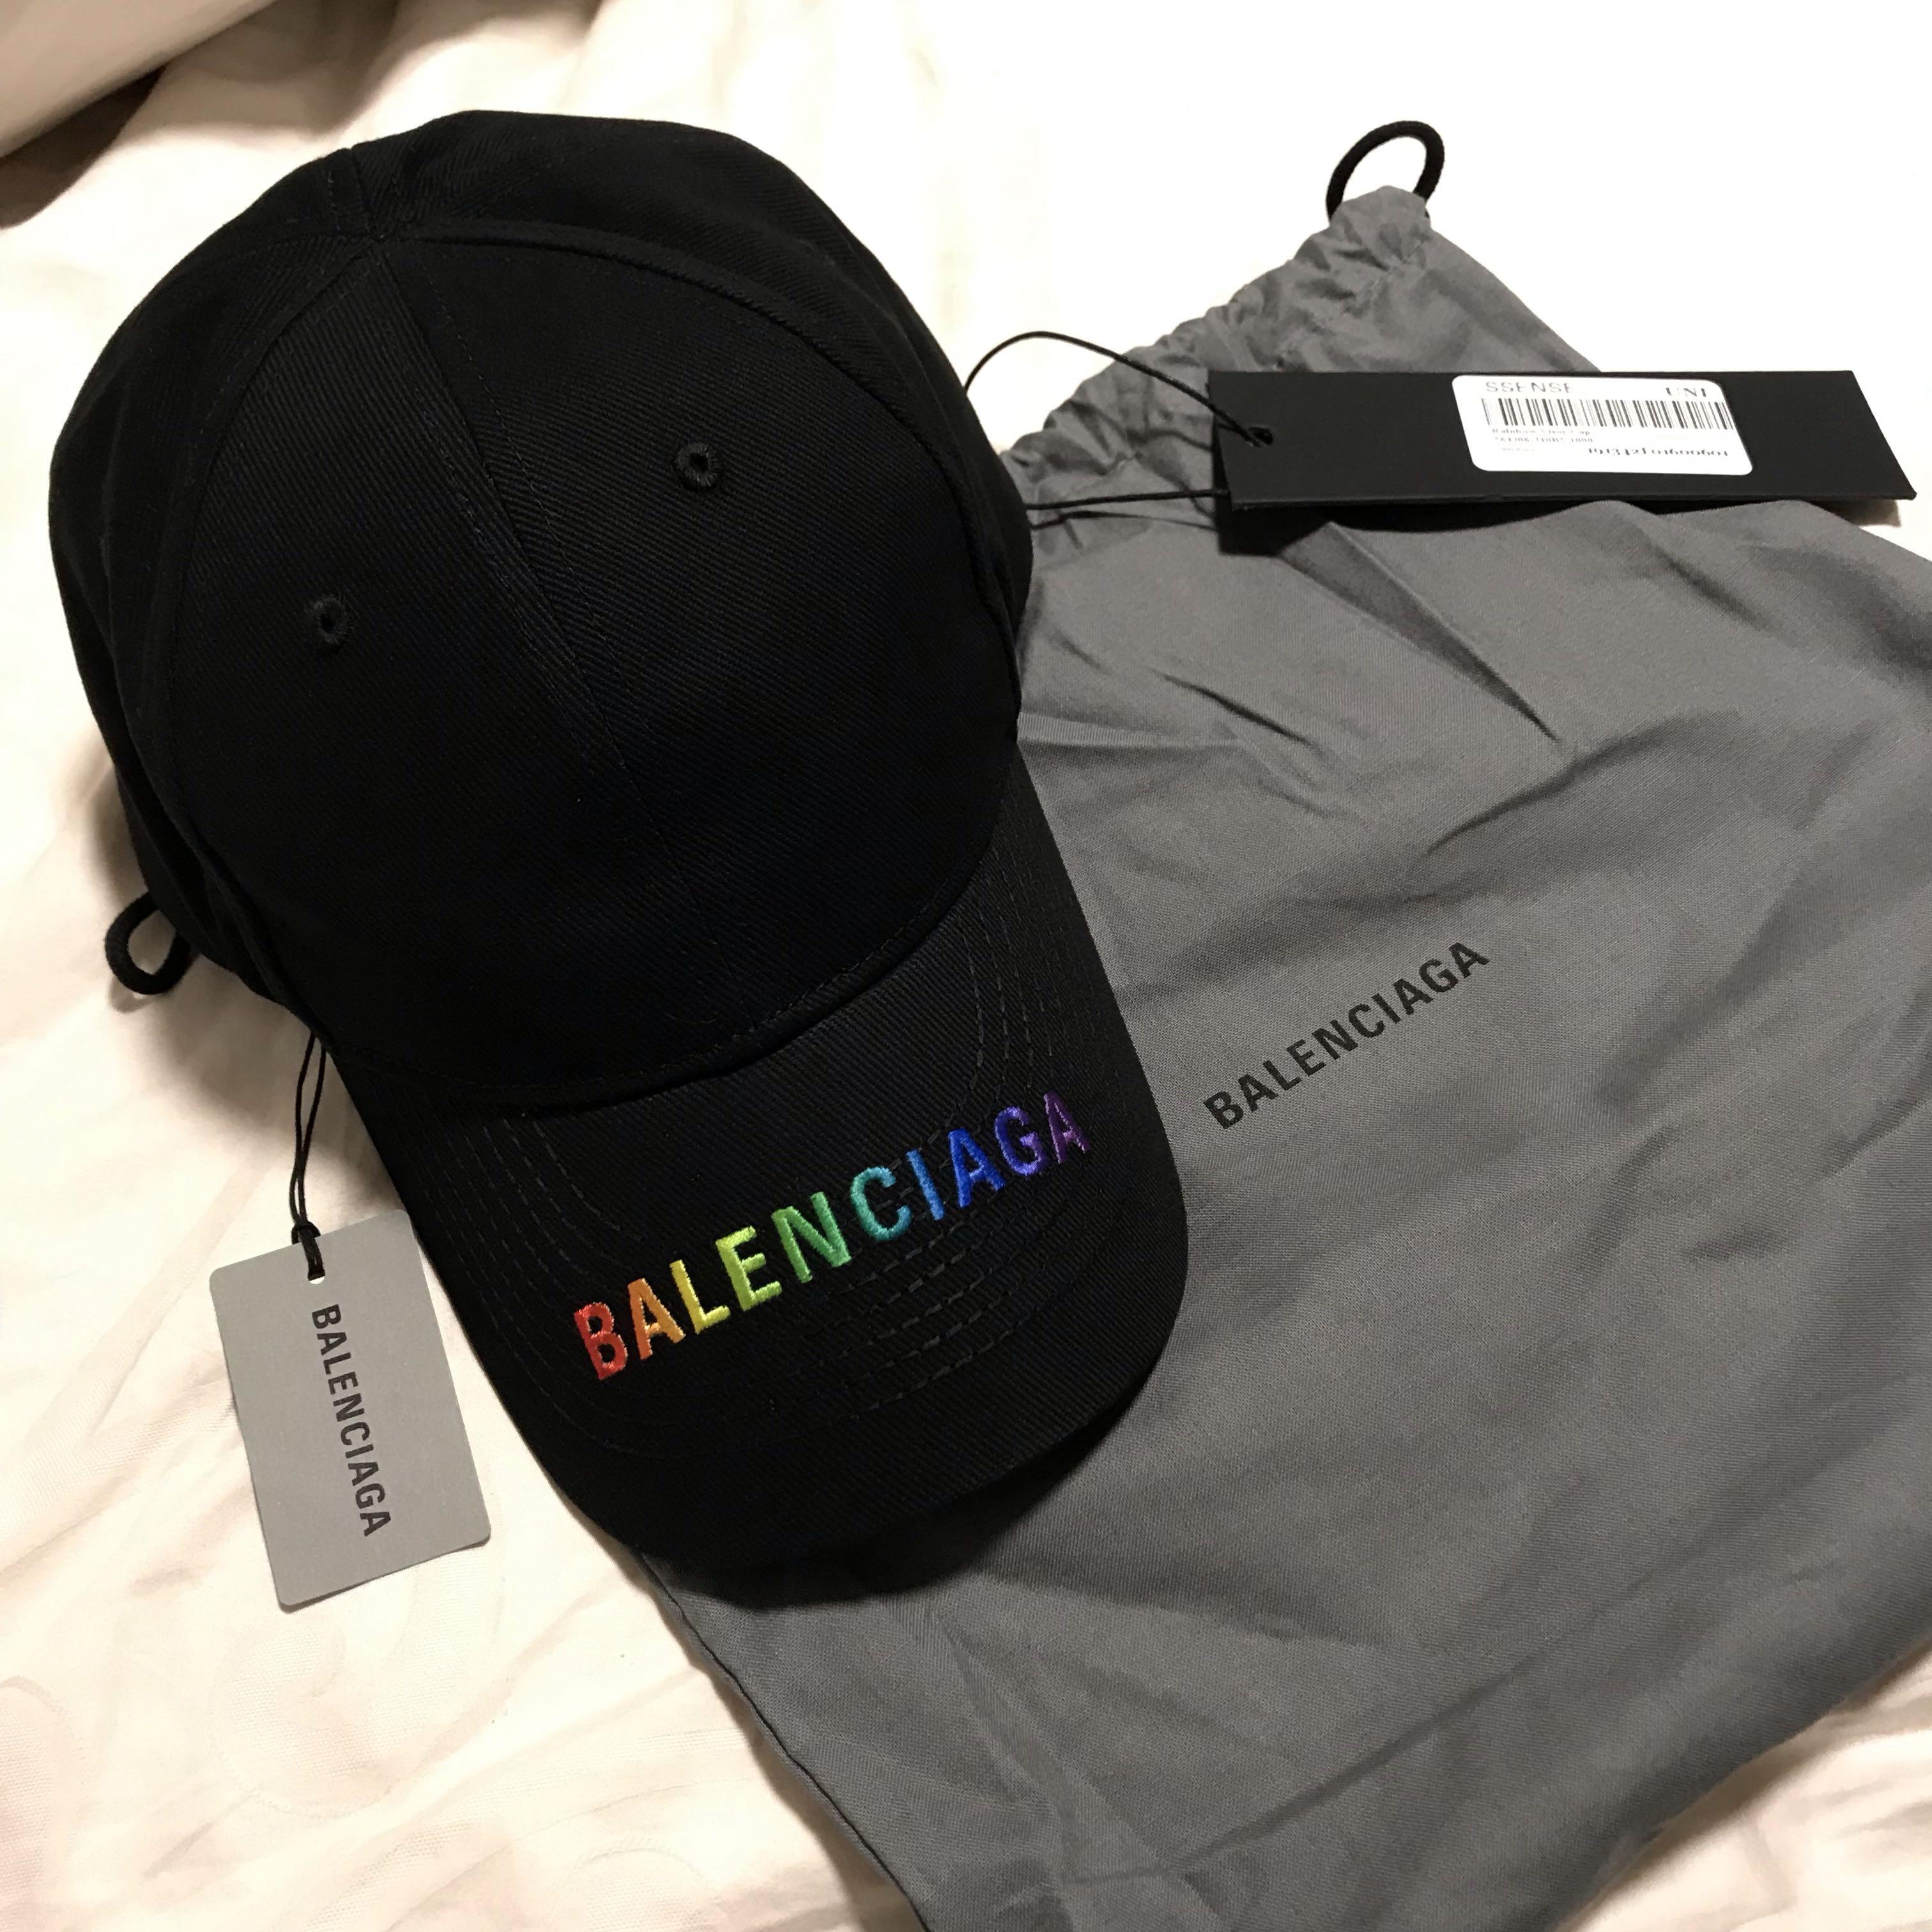 balenciaga hat rainbow